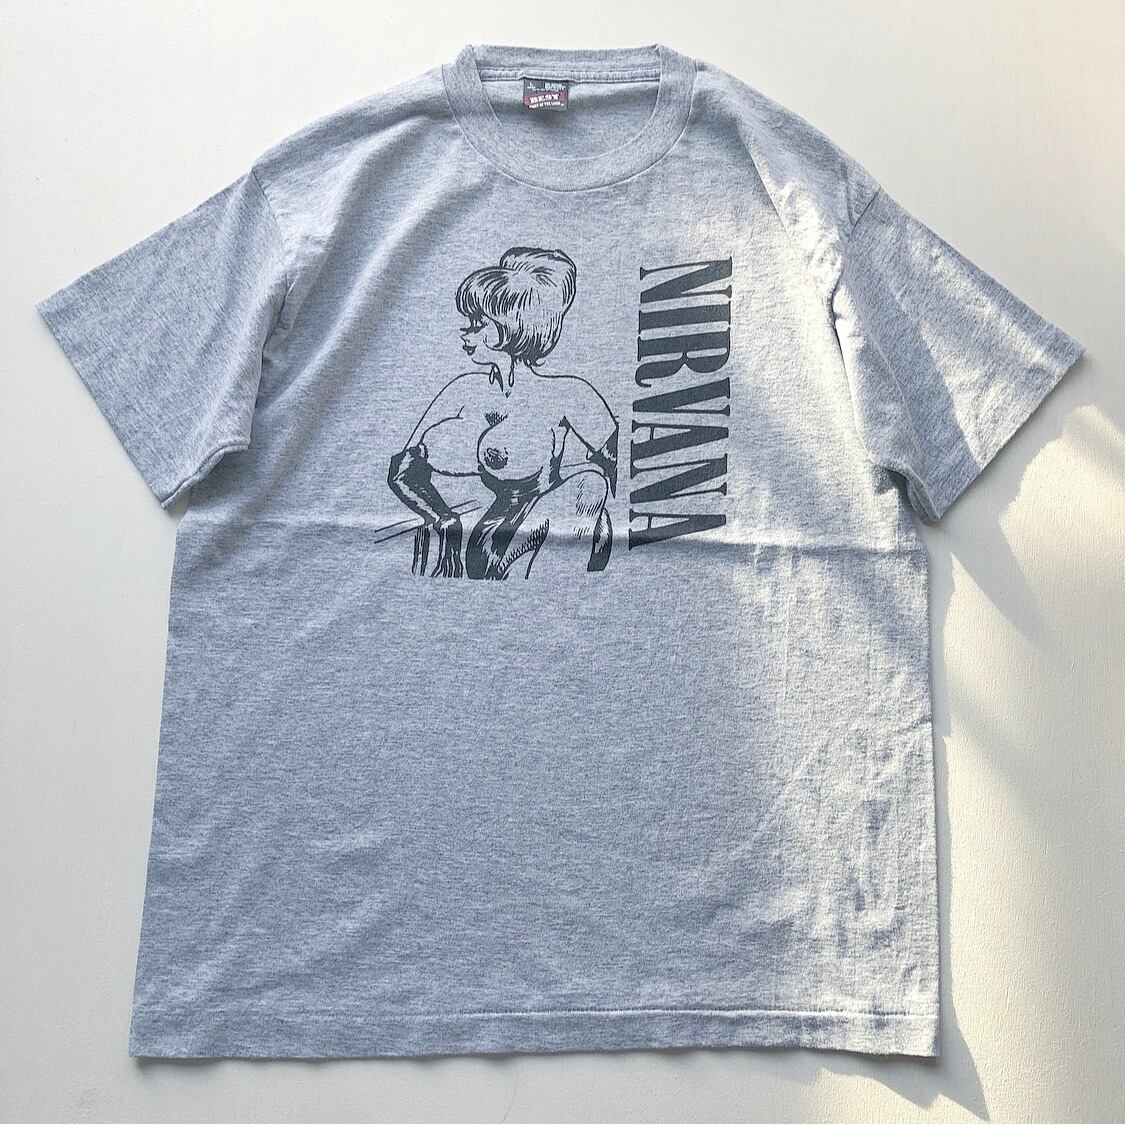 90s ニルバーナ インディーズ期ツアーTシャツ フルーツオブザルーム